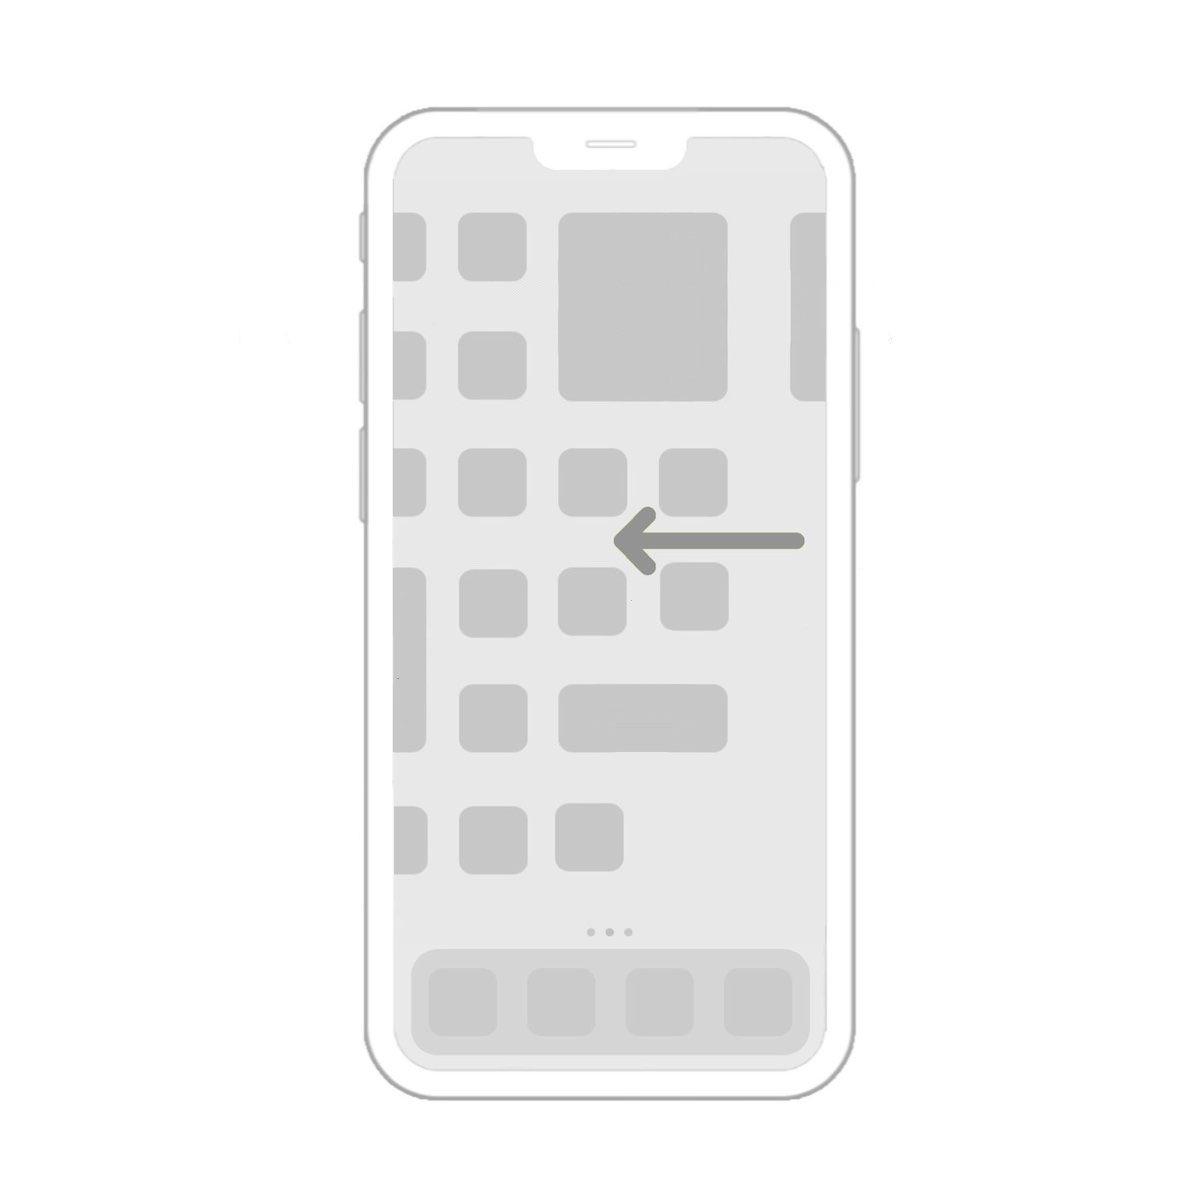 iOS 14 ile birlikte gelecek ana ekran widget'ları nasıl görünecek? 